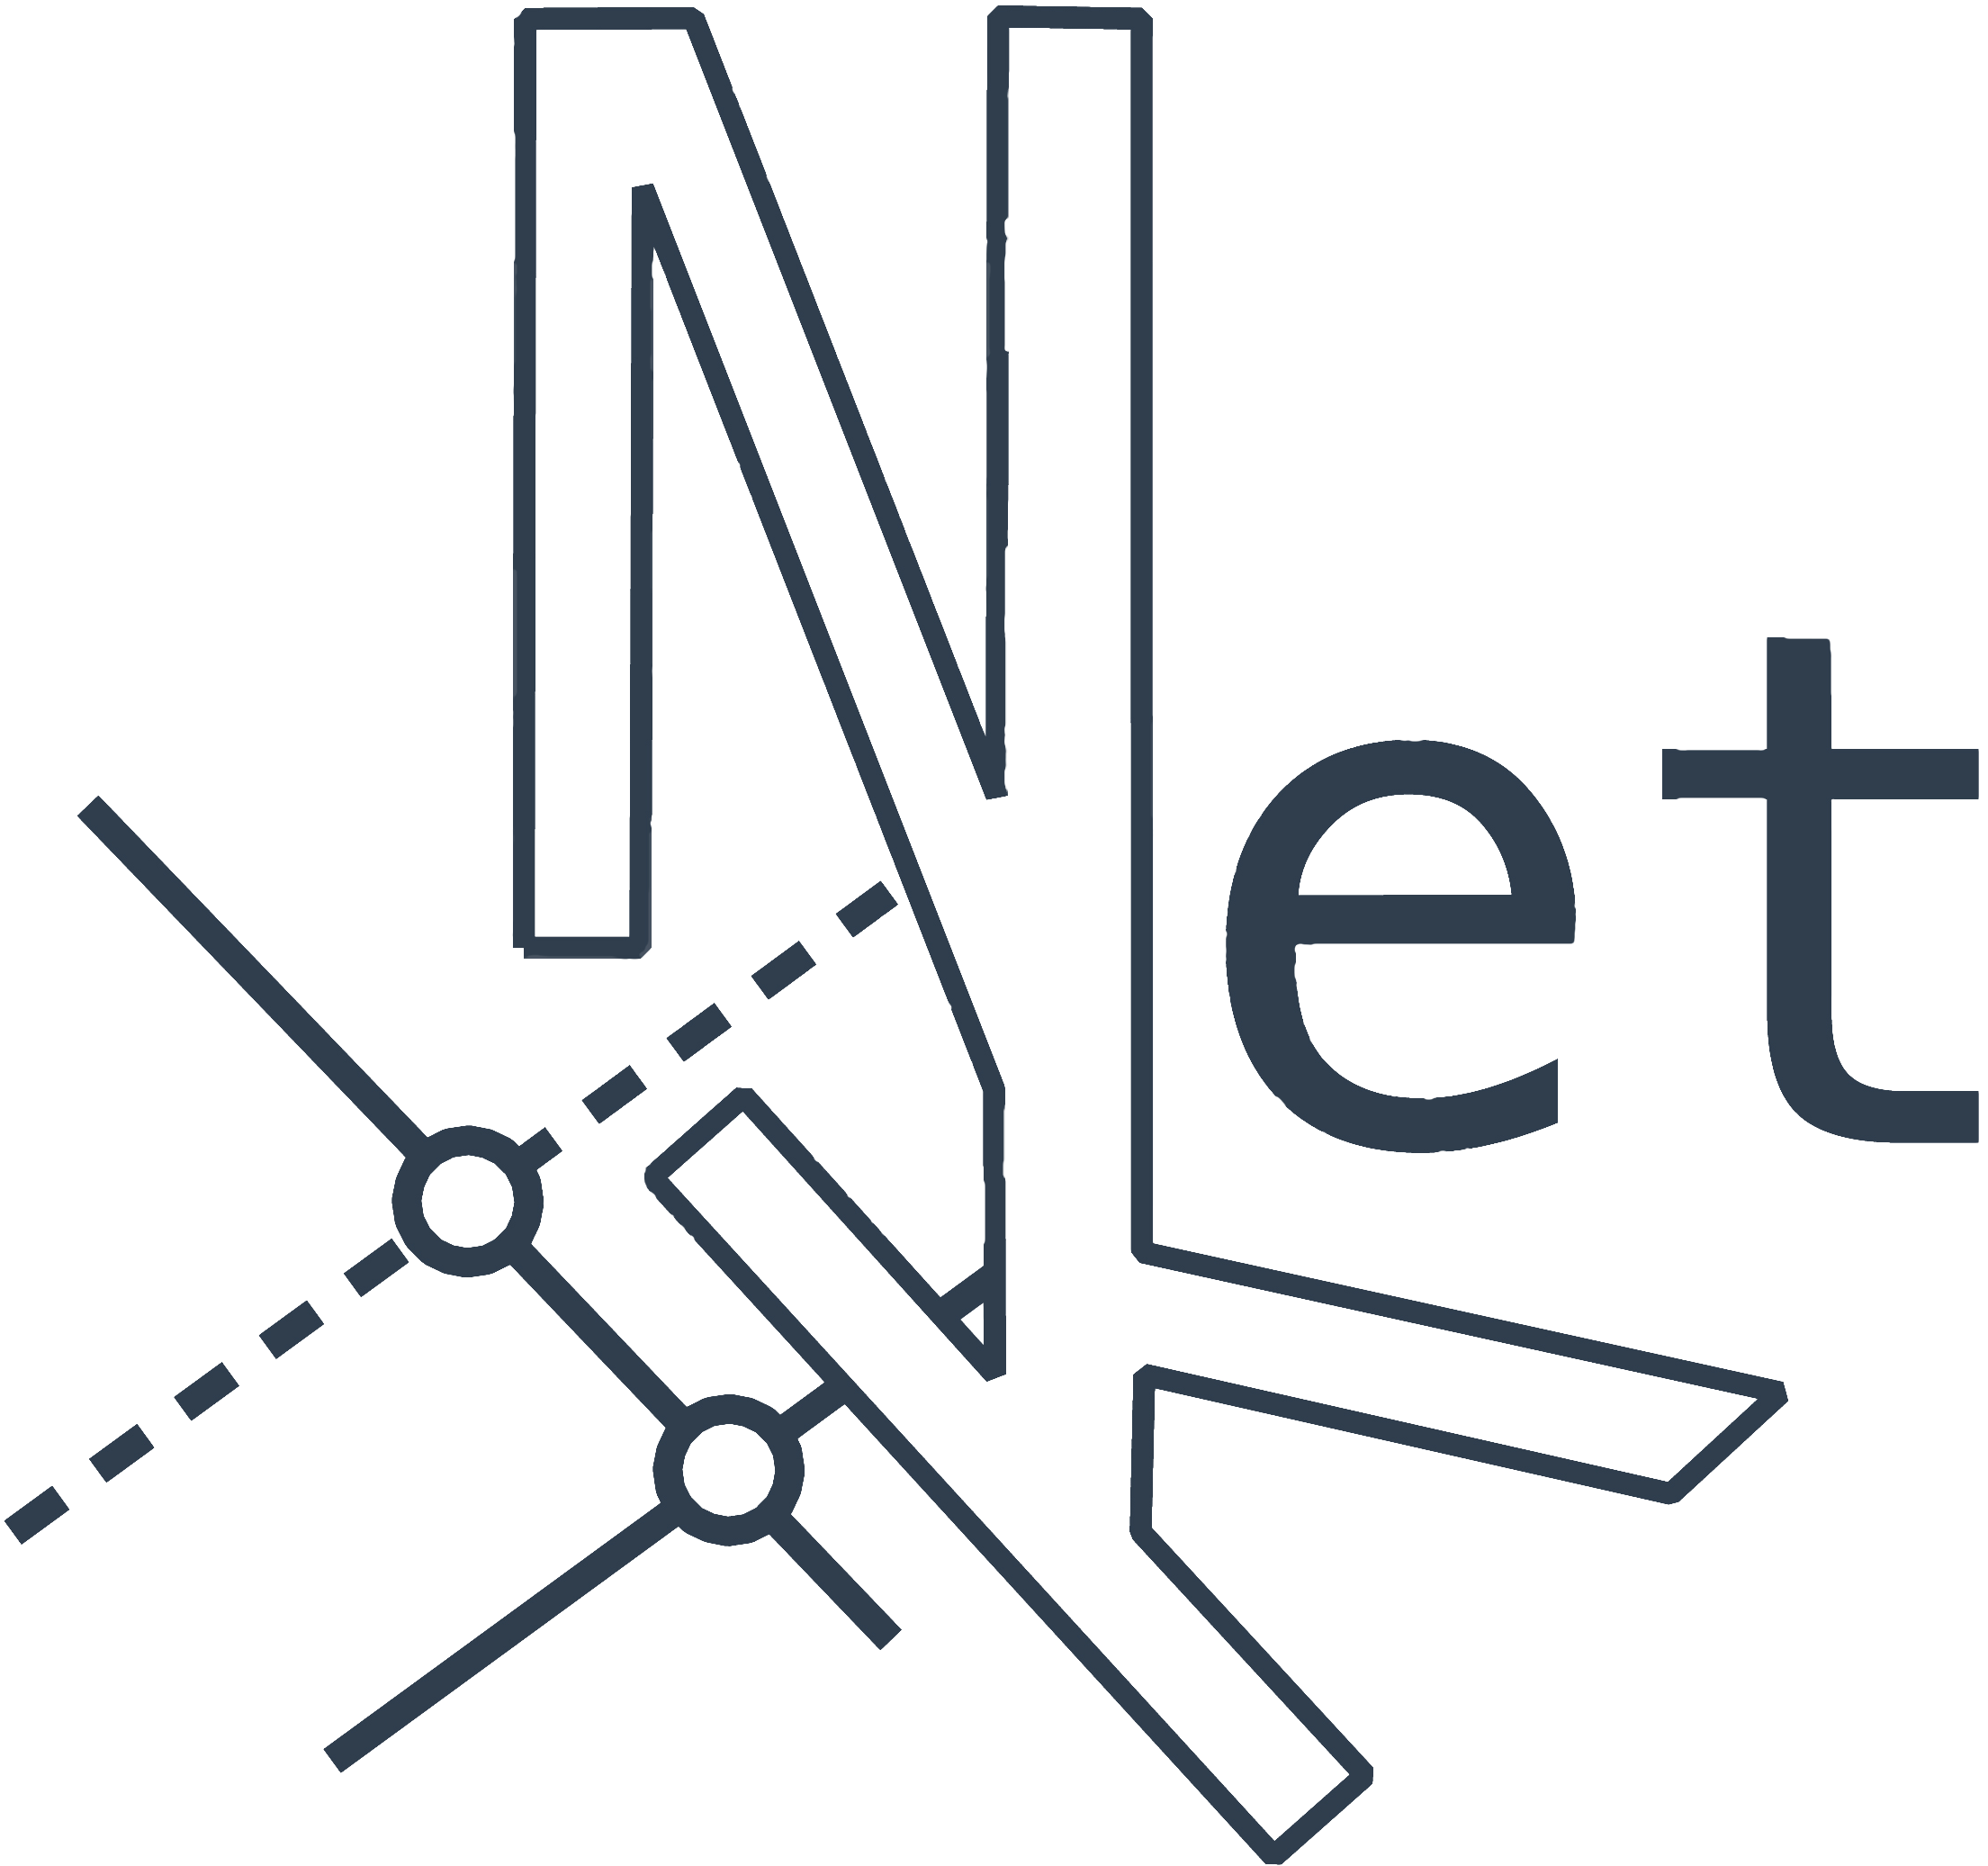 NetKet